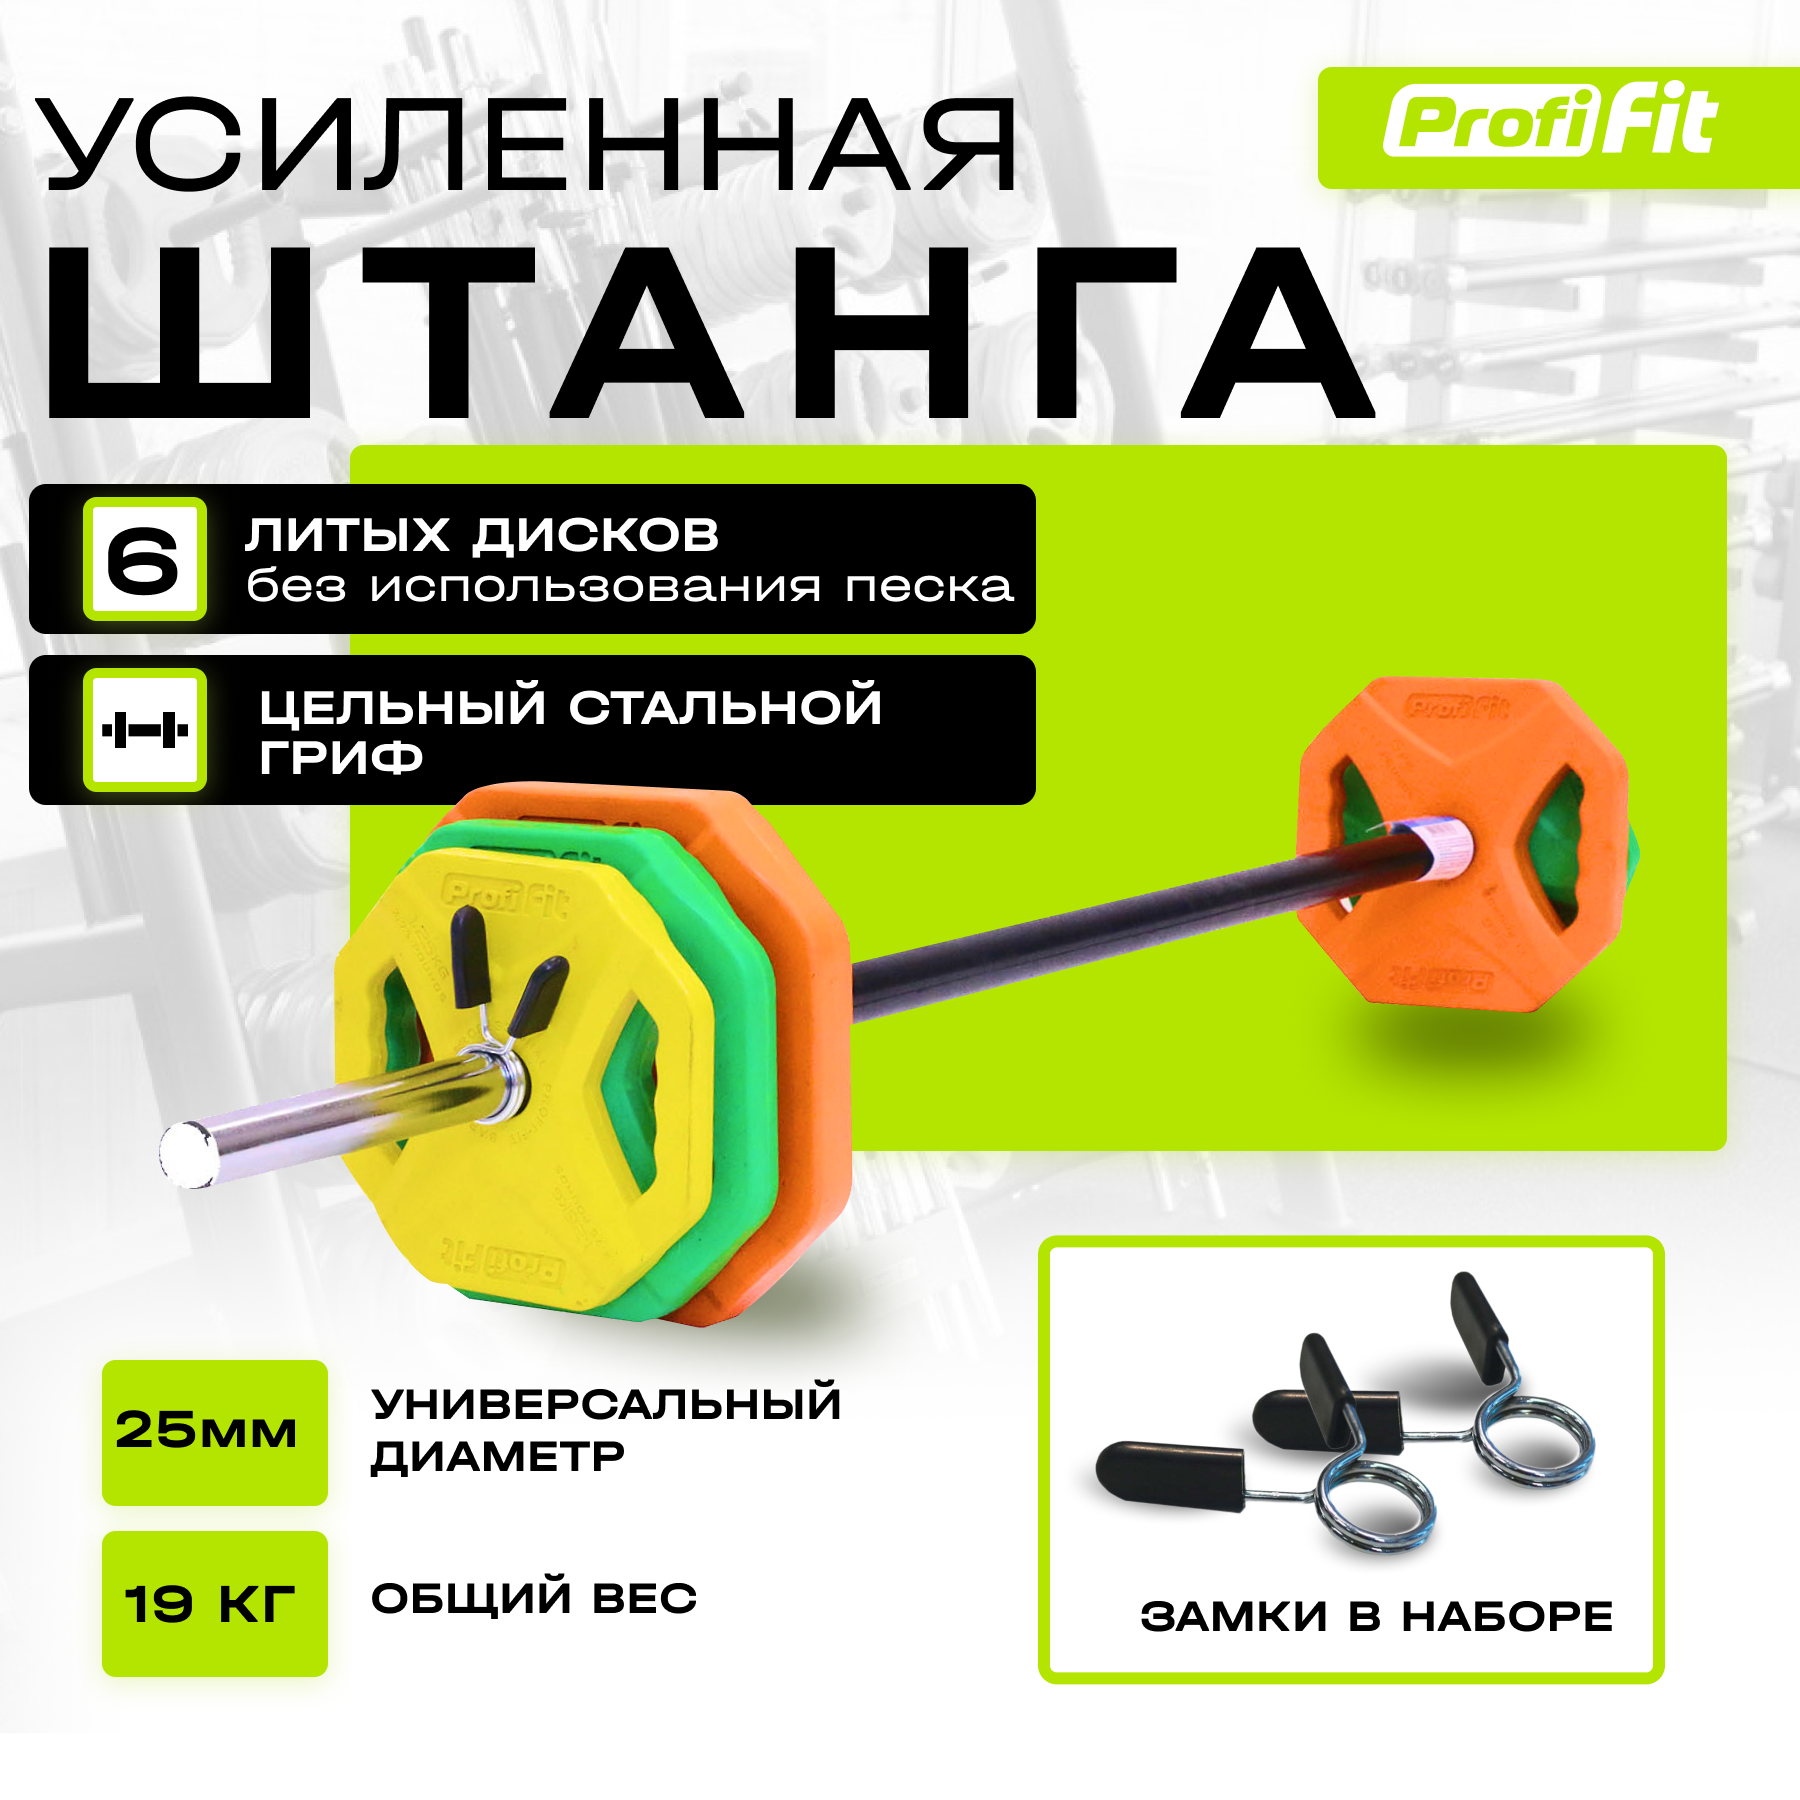 Штанга спортивная (Бодипамп) PROFI-FIT Progress, комплект с блинами, разборная, 19 кг